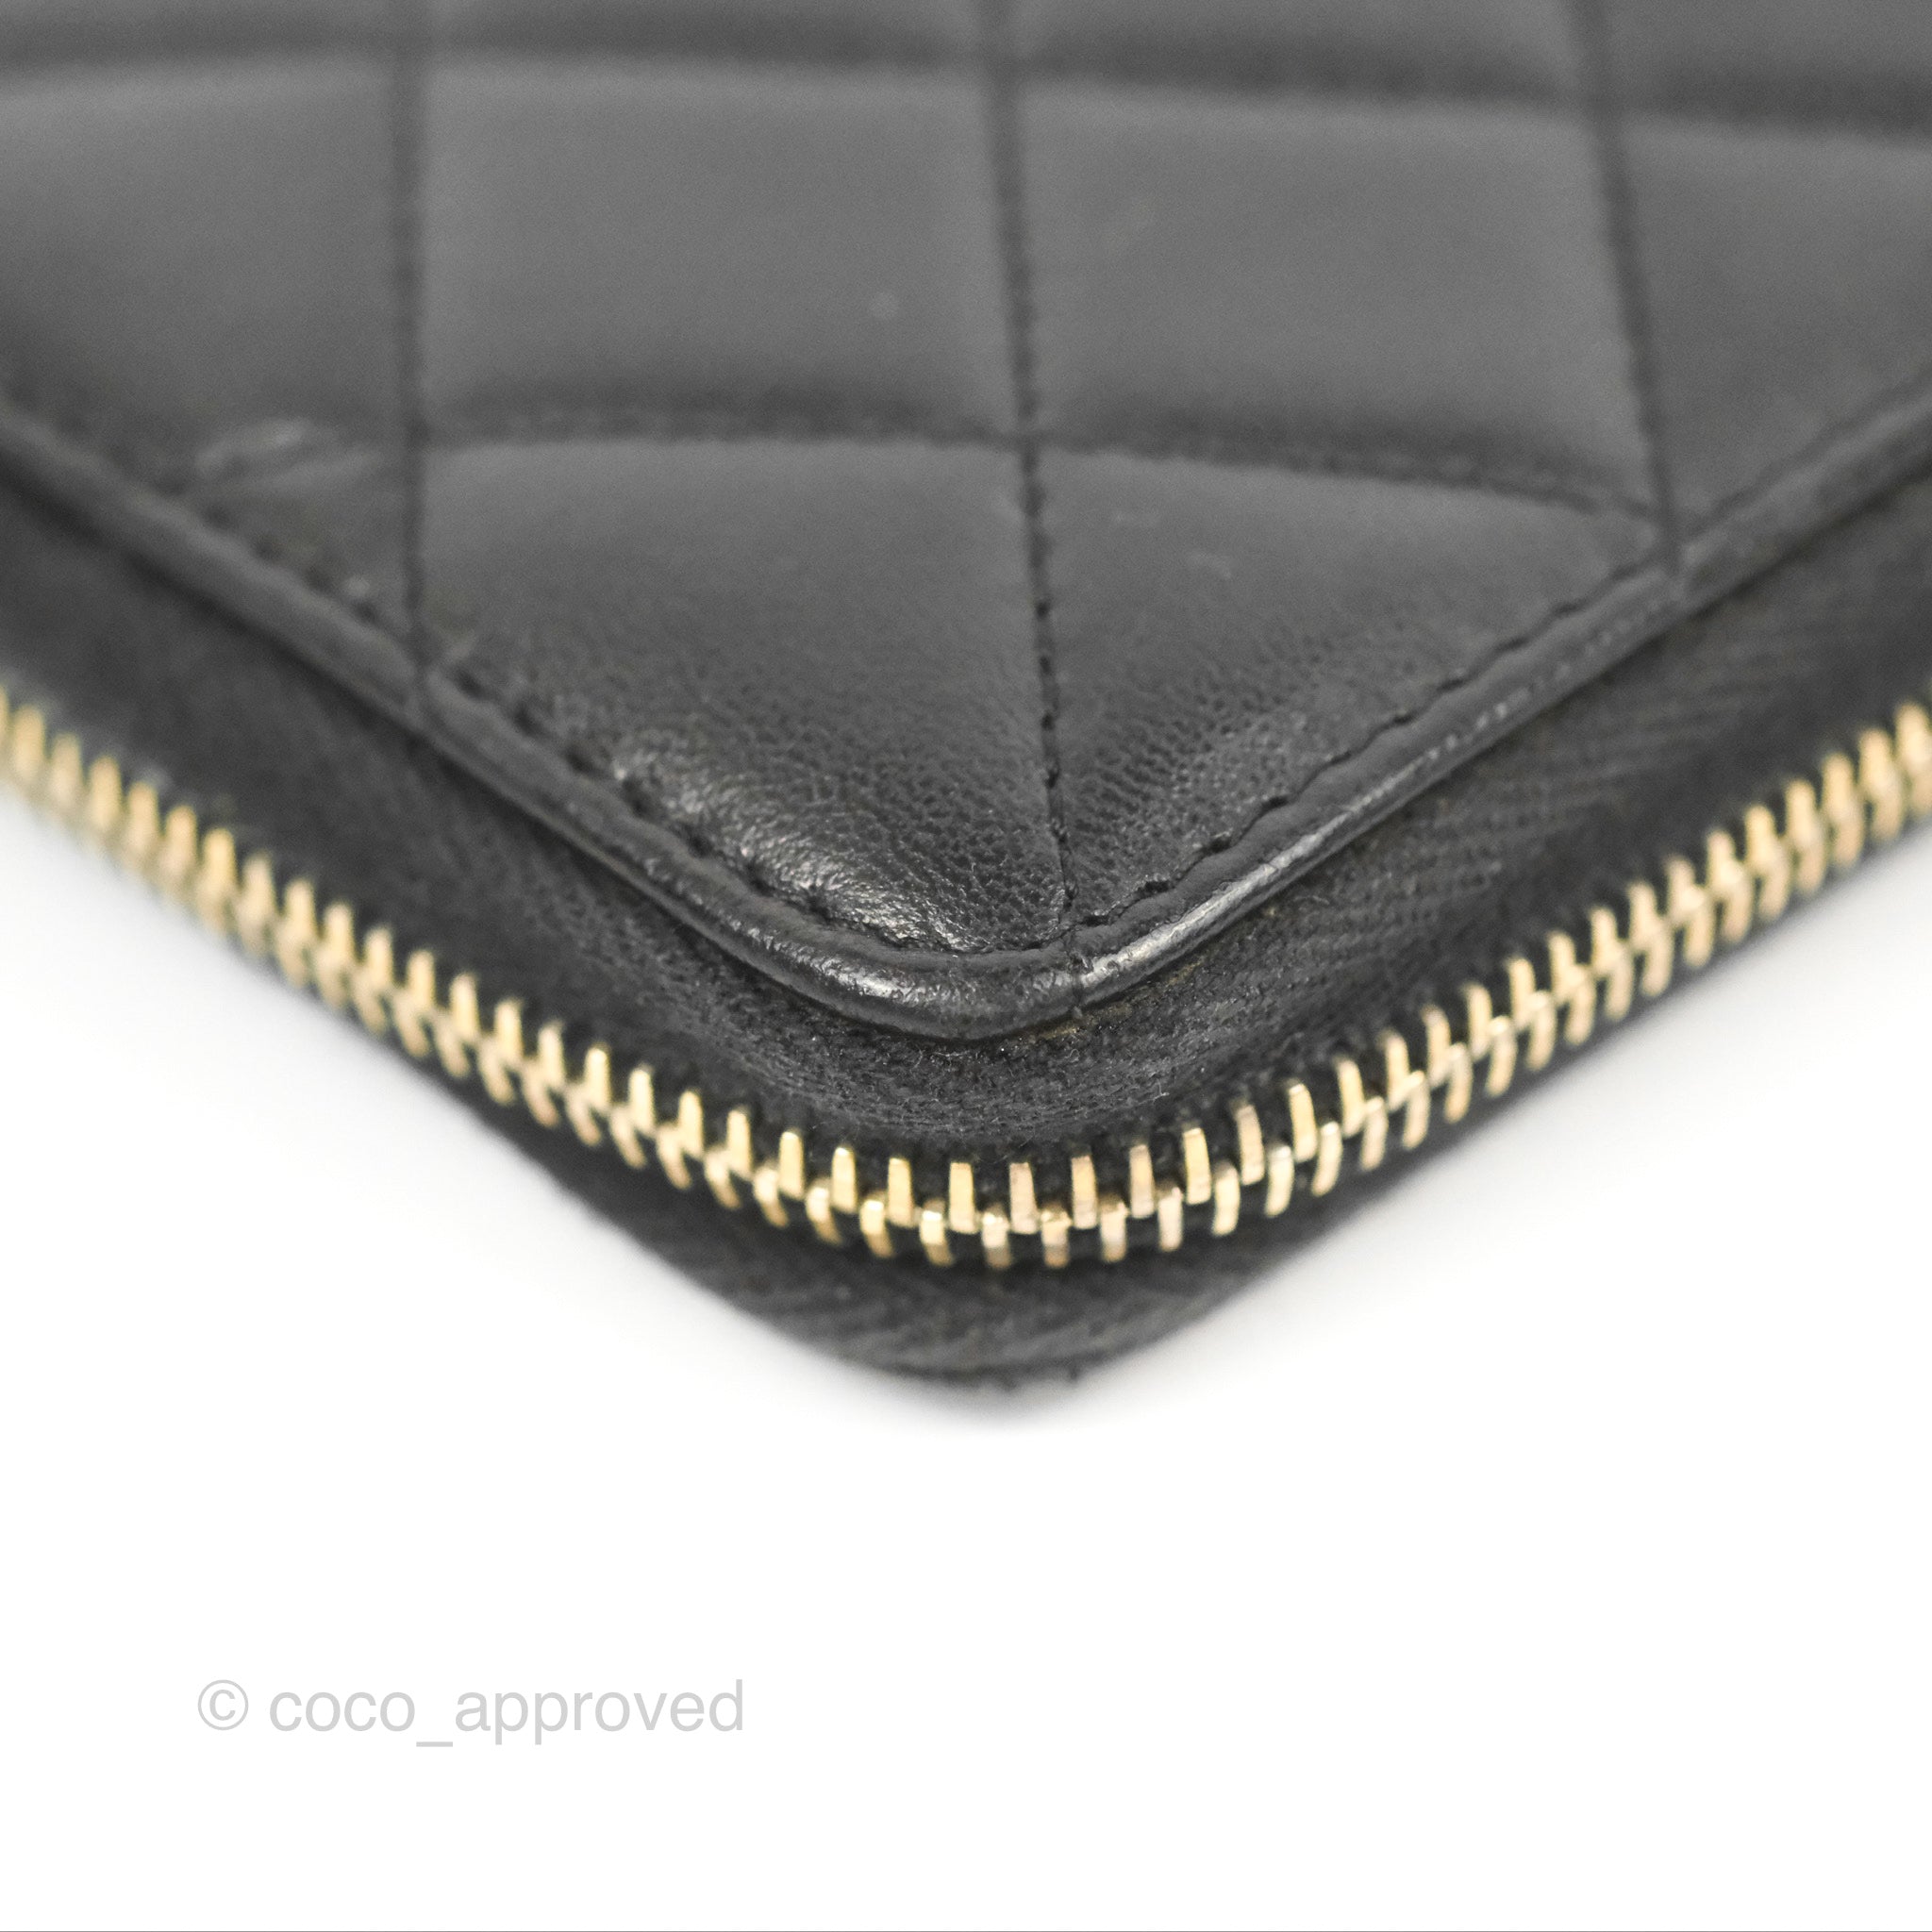 Chanel 19 Zip Wallet Card Holder Black Lambskin